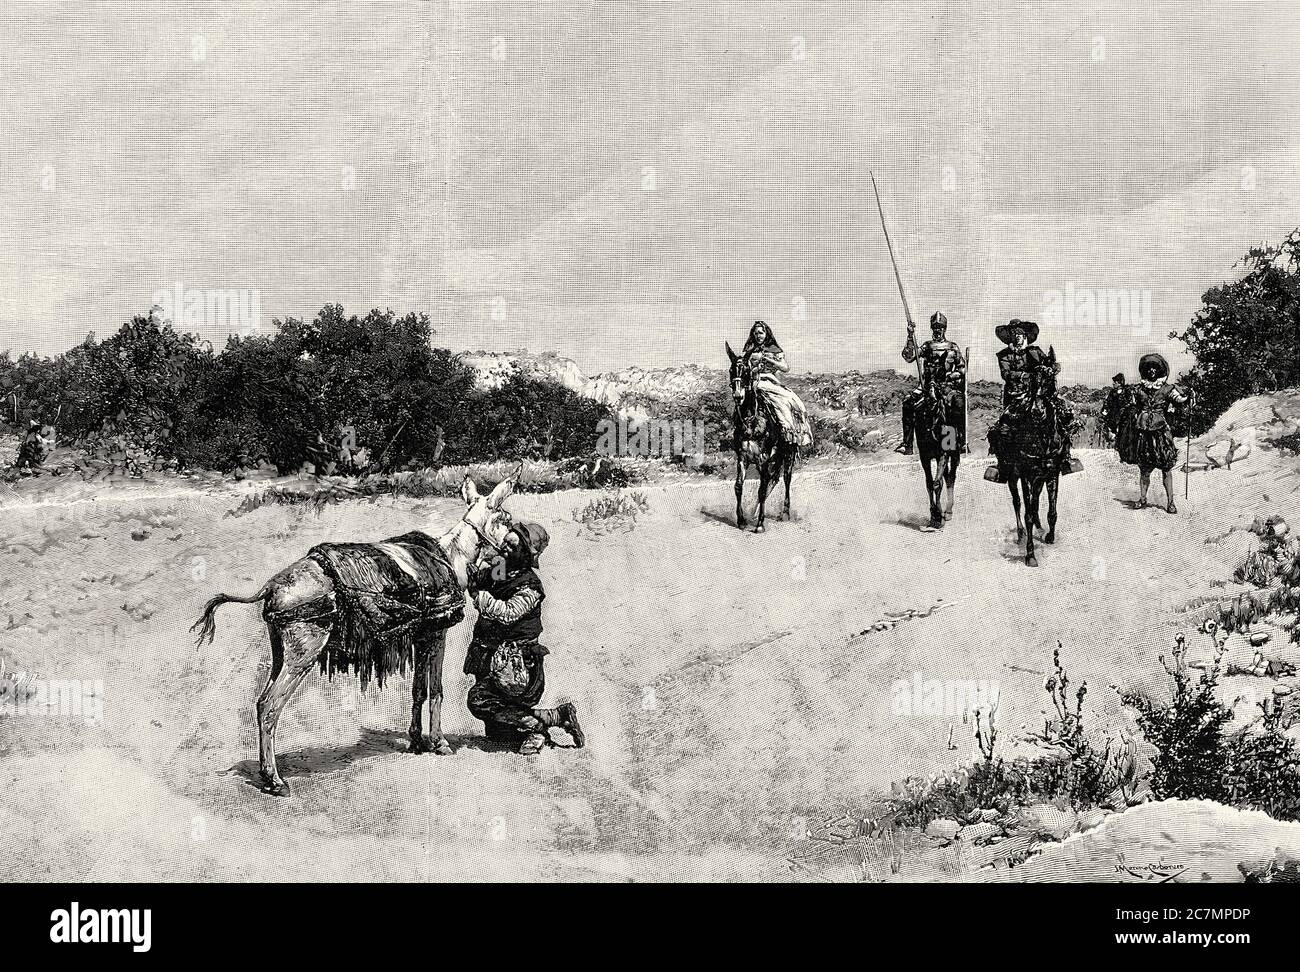 La riunione dell'asino, episodio di Don Chisciotte, dipinto di Jose Moreno Carbonero. Da la Ilustracion Española y americana 1895 Foto Stock